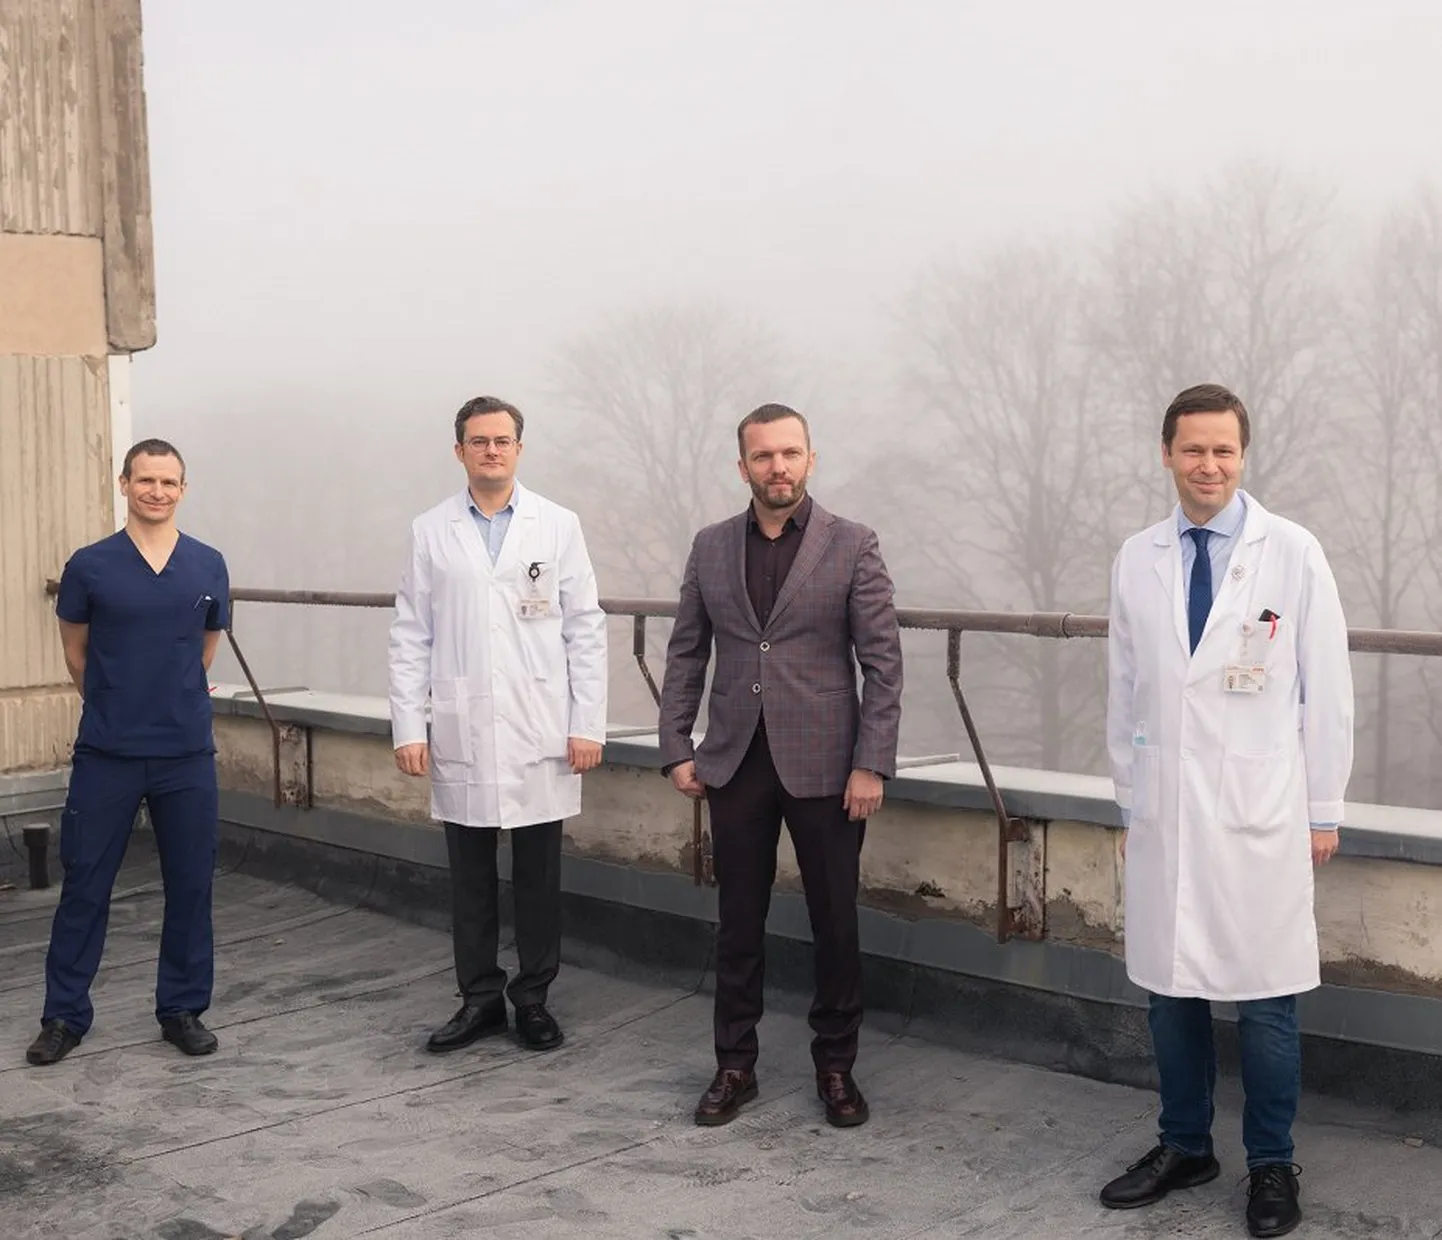 No kreisās: Mārcis Gediņš (PSKUS Asinsvadu ķirurģijas virsārsts), Artūrs Ozoliņš (PSKUS Ķirurģijas klīnikas ķirurgs), Armands Sīviņš (RAKUS Onkoķirurģijas klīnikas vadītājs), prof. Pēteris Stradiņš (PSKUS Sirds ķirurģijas centra vadītājs).